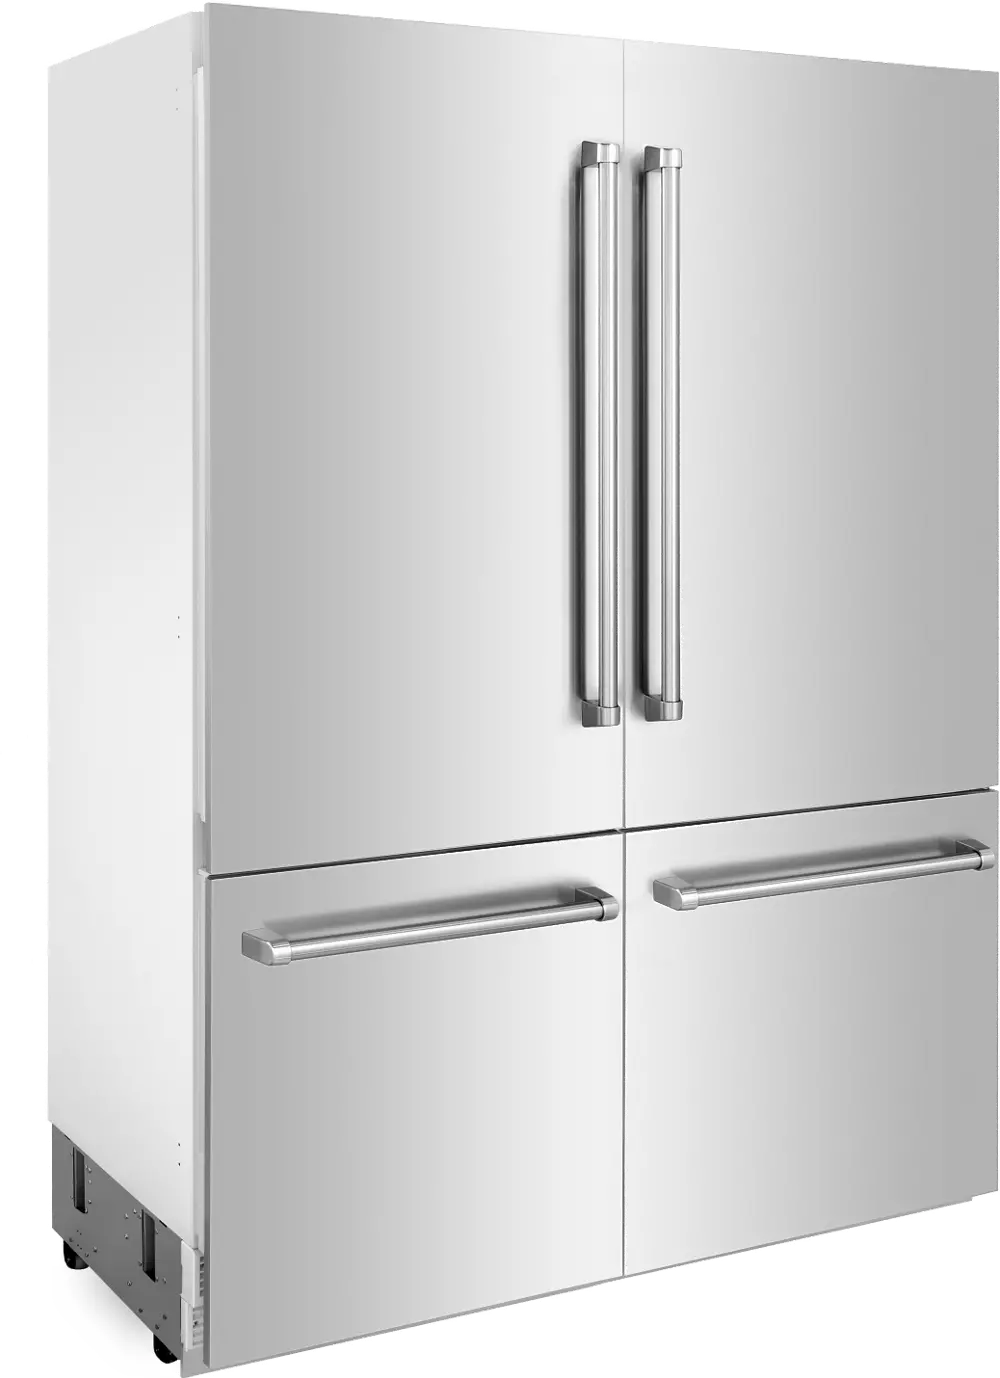 RBIV-304-60 ZLINE 60  32.2 cu ft 4-Door French Door Refrigerator - Built-In Counter Depth Stainless Steel-1